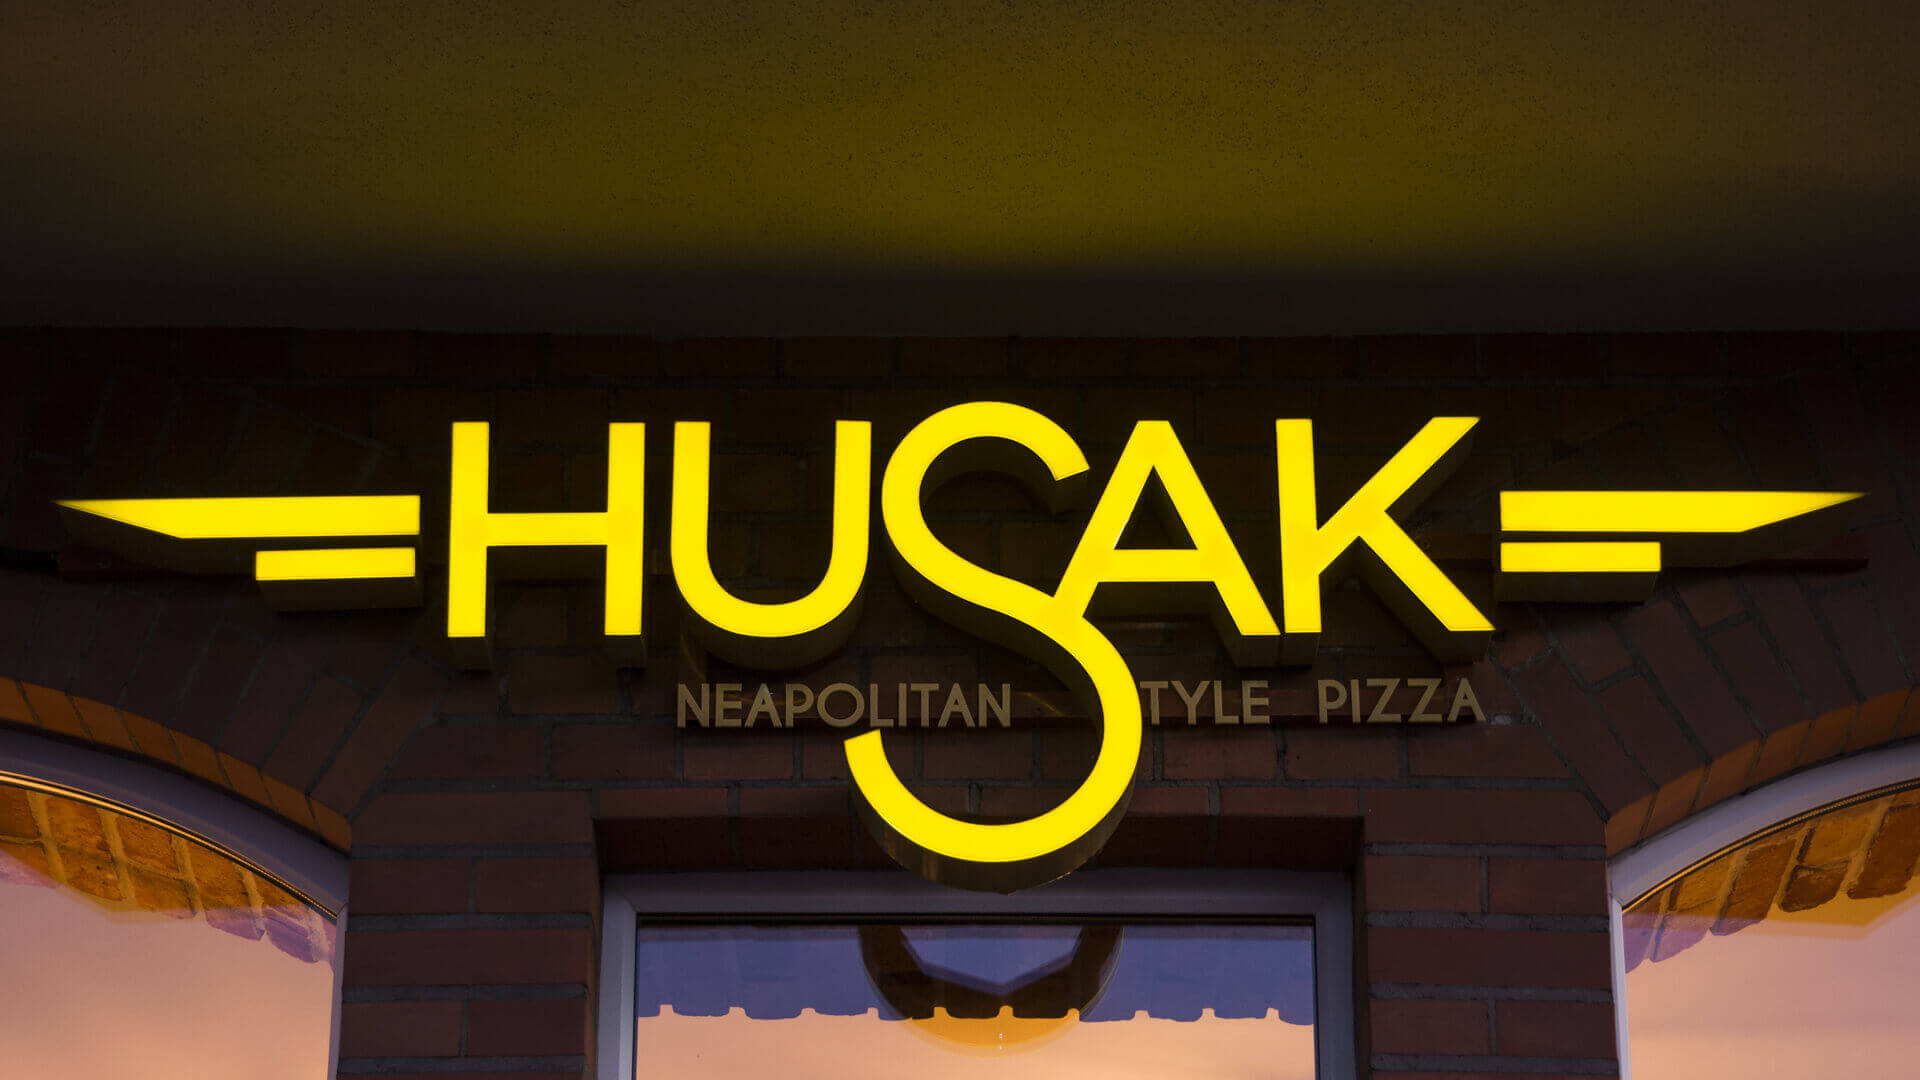 Husak Pizzeria - hussak-pizzeria-zlote-literatur-räumliche-beleuchtete-fliesen-buchstaben-an-der-wand-mit-kartusche-über-den-einlass-über-das-wandschild-an-der-wand-montiert-grunwaldzka-gdansk (14)